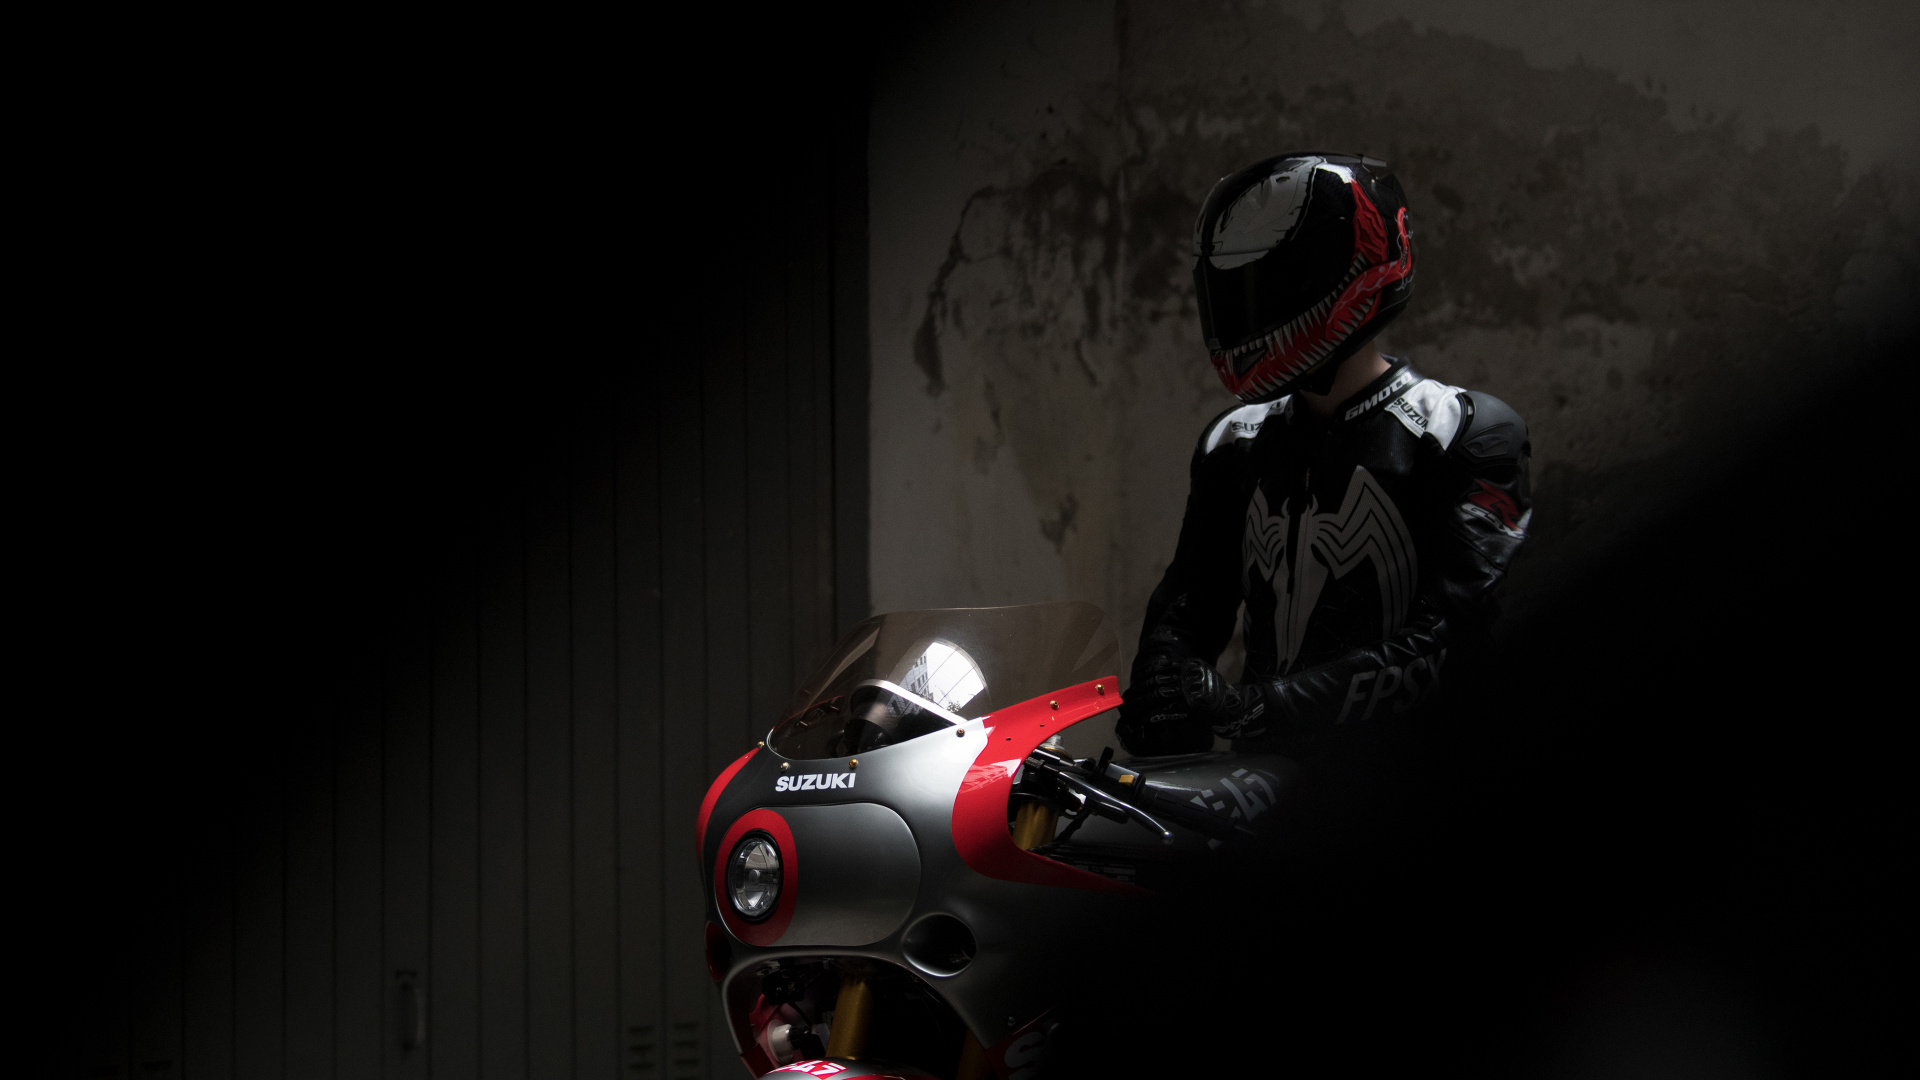 铃木喜欢R1100, 铃木喜欢-R, 红色的, 摩托车头盔, 车灯 壁纸 1920x1080 允许